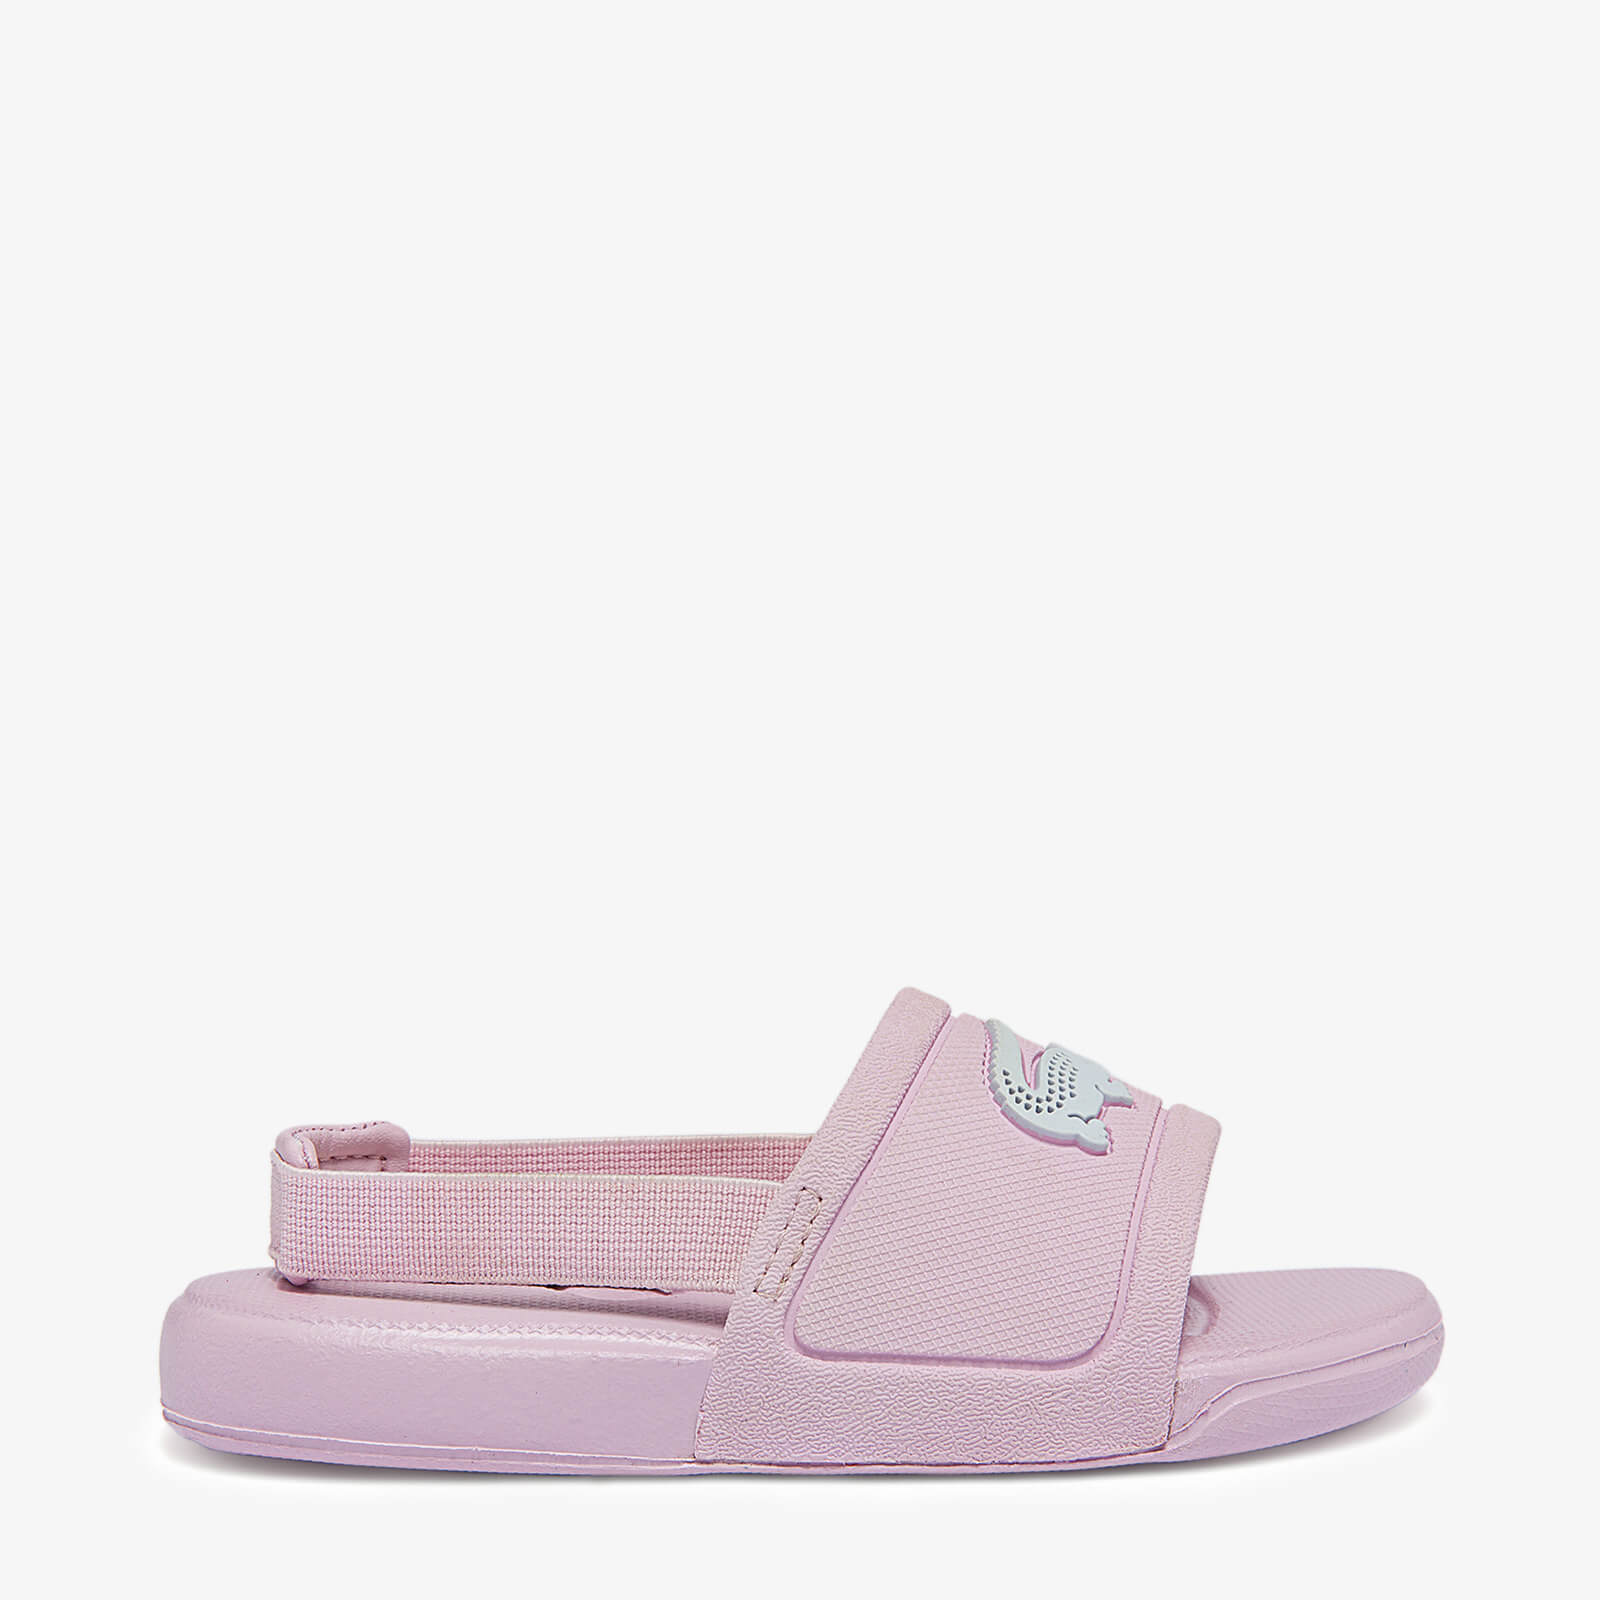 Lacoste Infant Slide Sandals - Pink - UK 5 Toddler